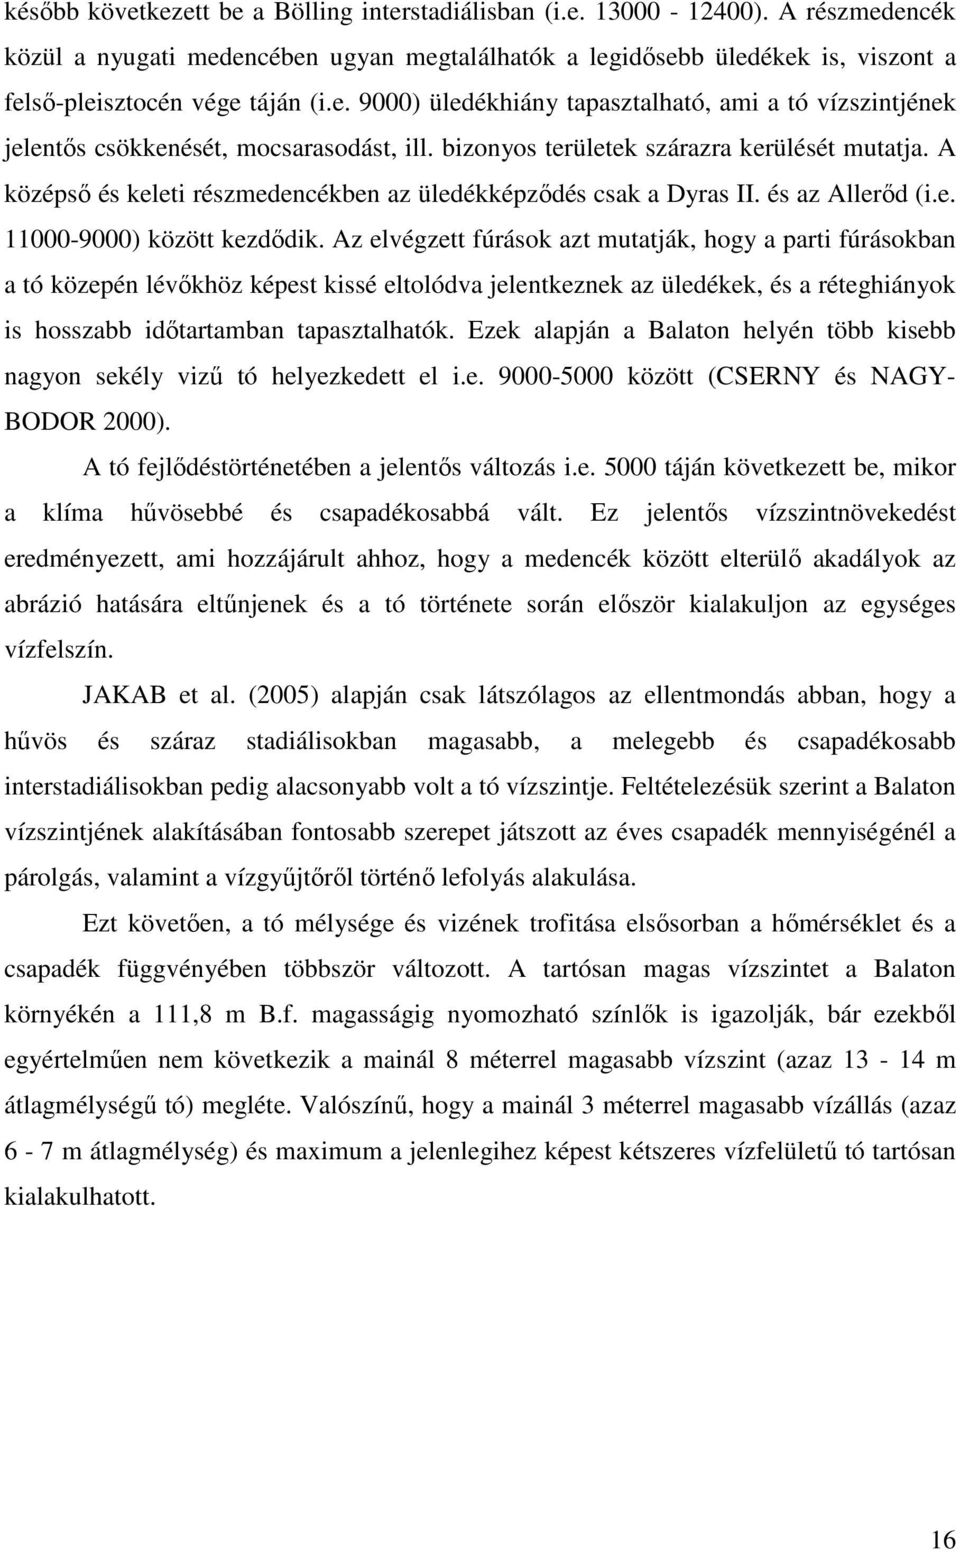 A középsı és keleti részmedencékben az üledékképzıdés csak a Dyras II. és az Allerıd (i.e. 11000-9000) között kezdıdik.